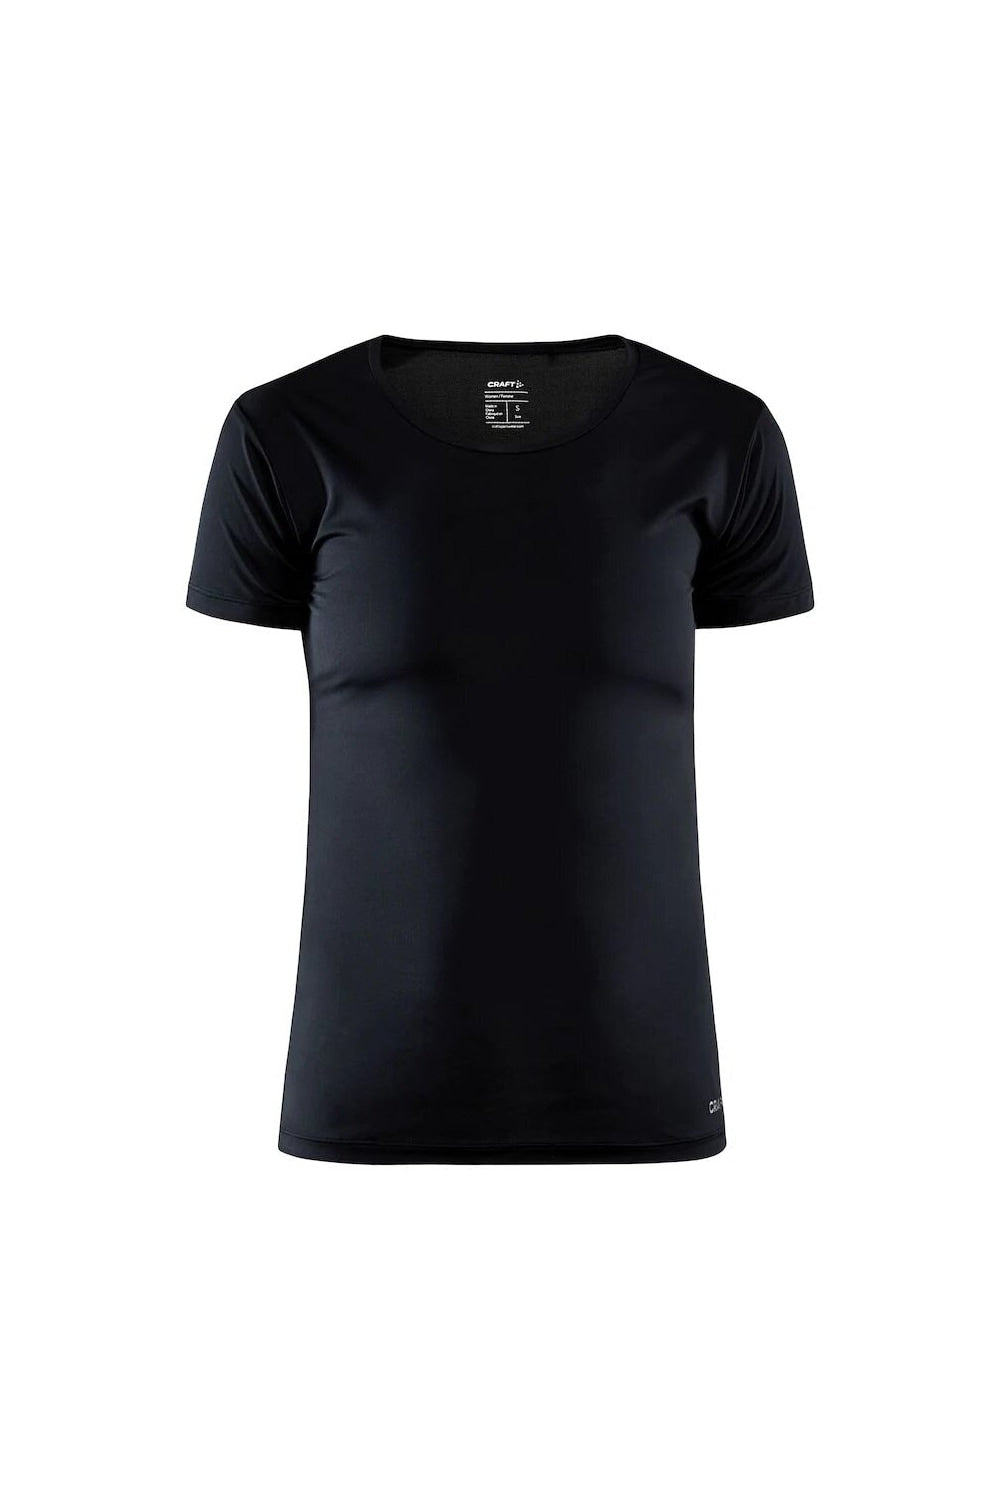 Womens/Ladies Essential Core Dry T-Shirt - Black